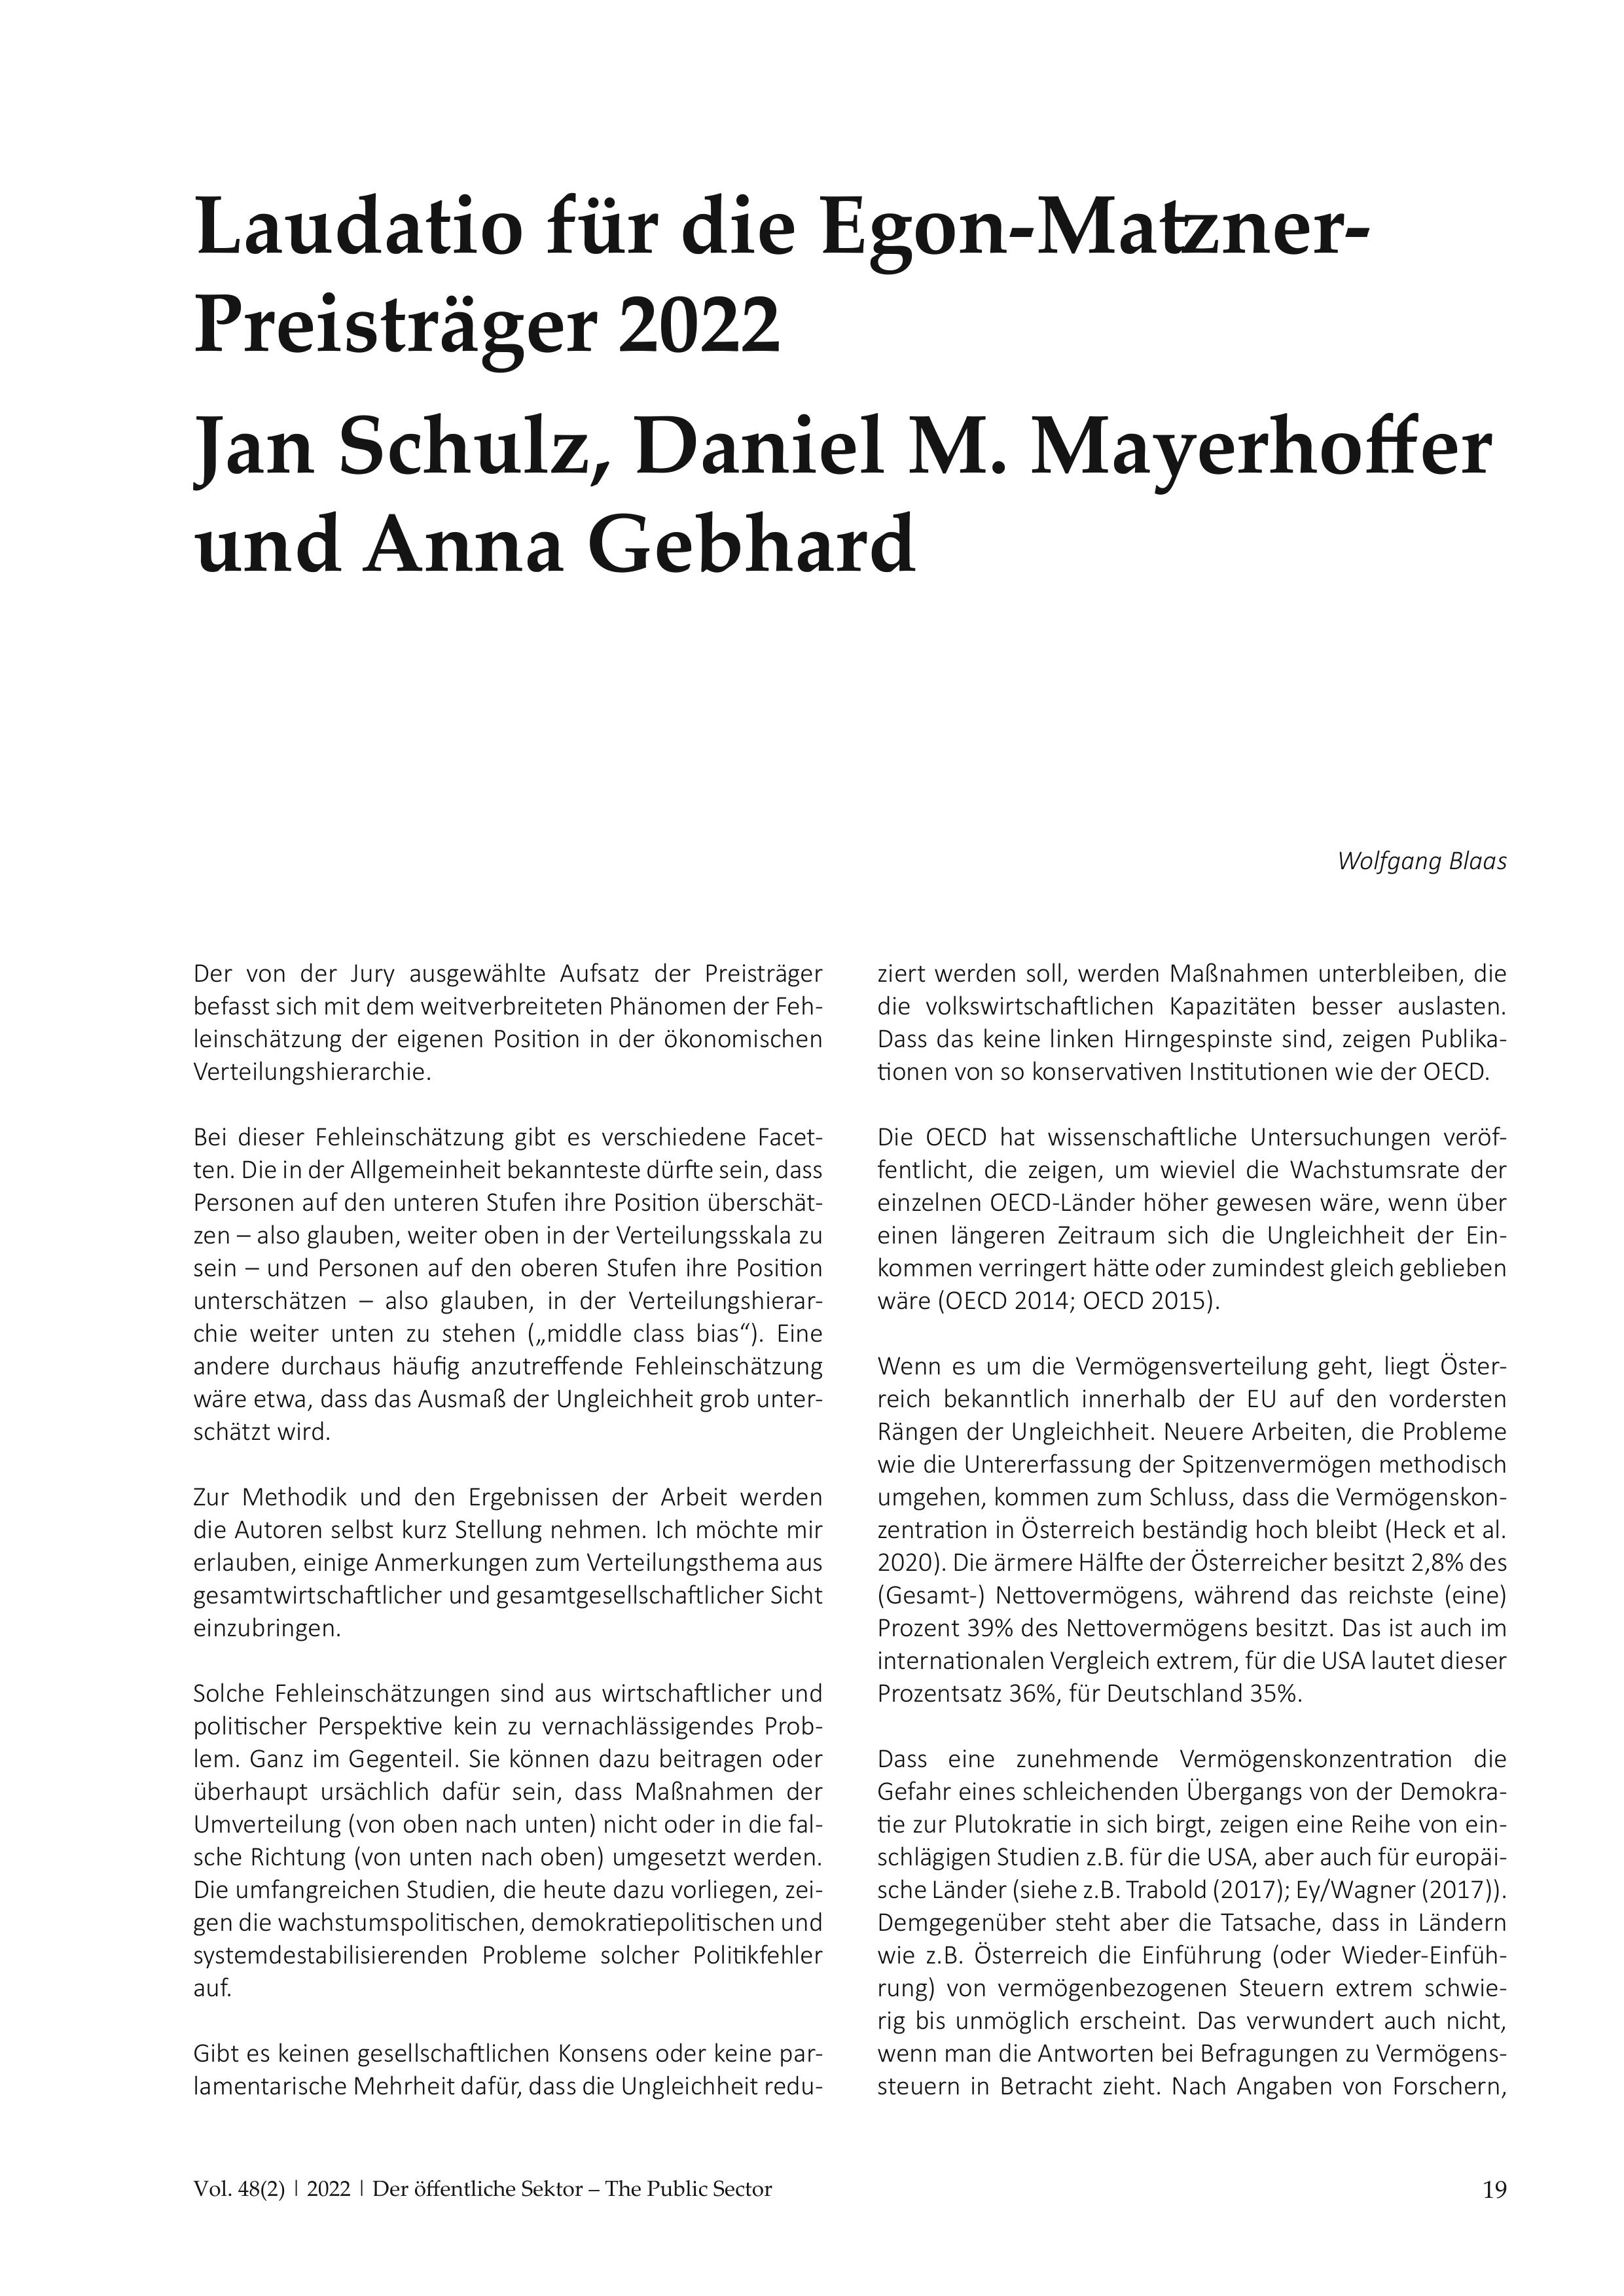 Laudatio für die Egon-Matzner-Preisträger 2022 Jan Schulz, Daniel M. Mayerhoffer und Anna Gebhard